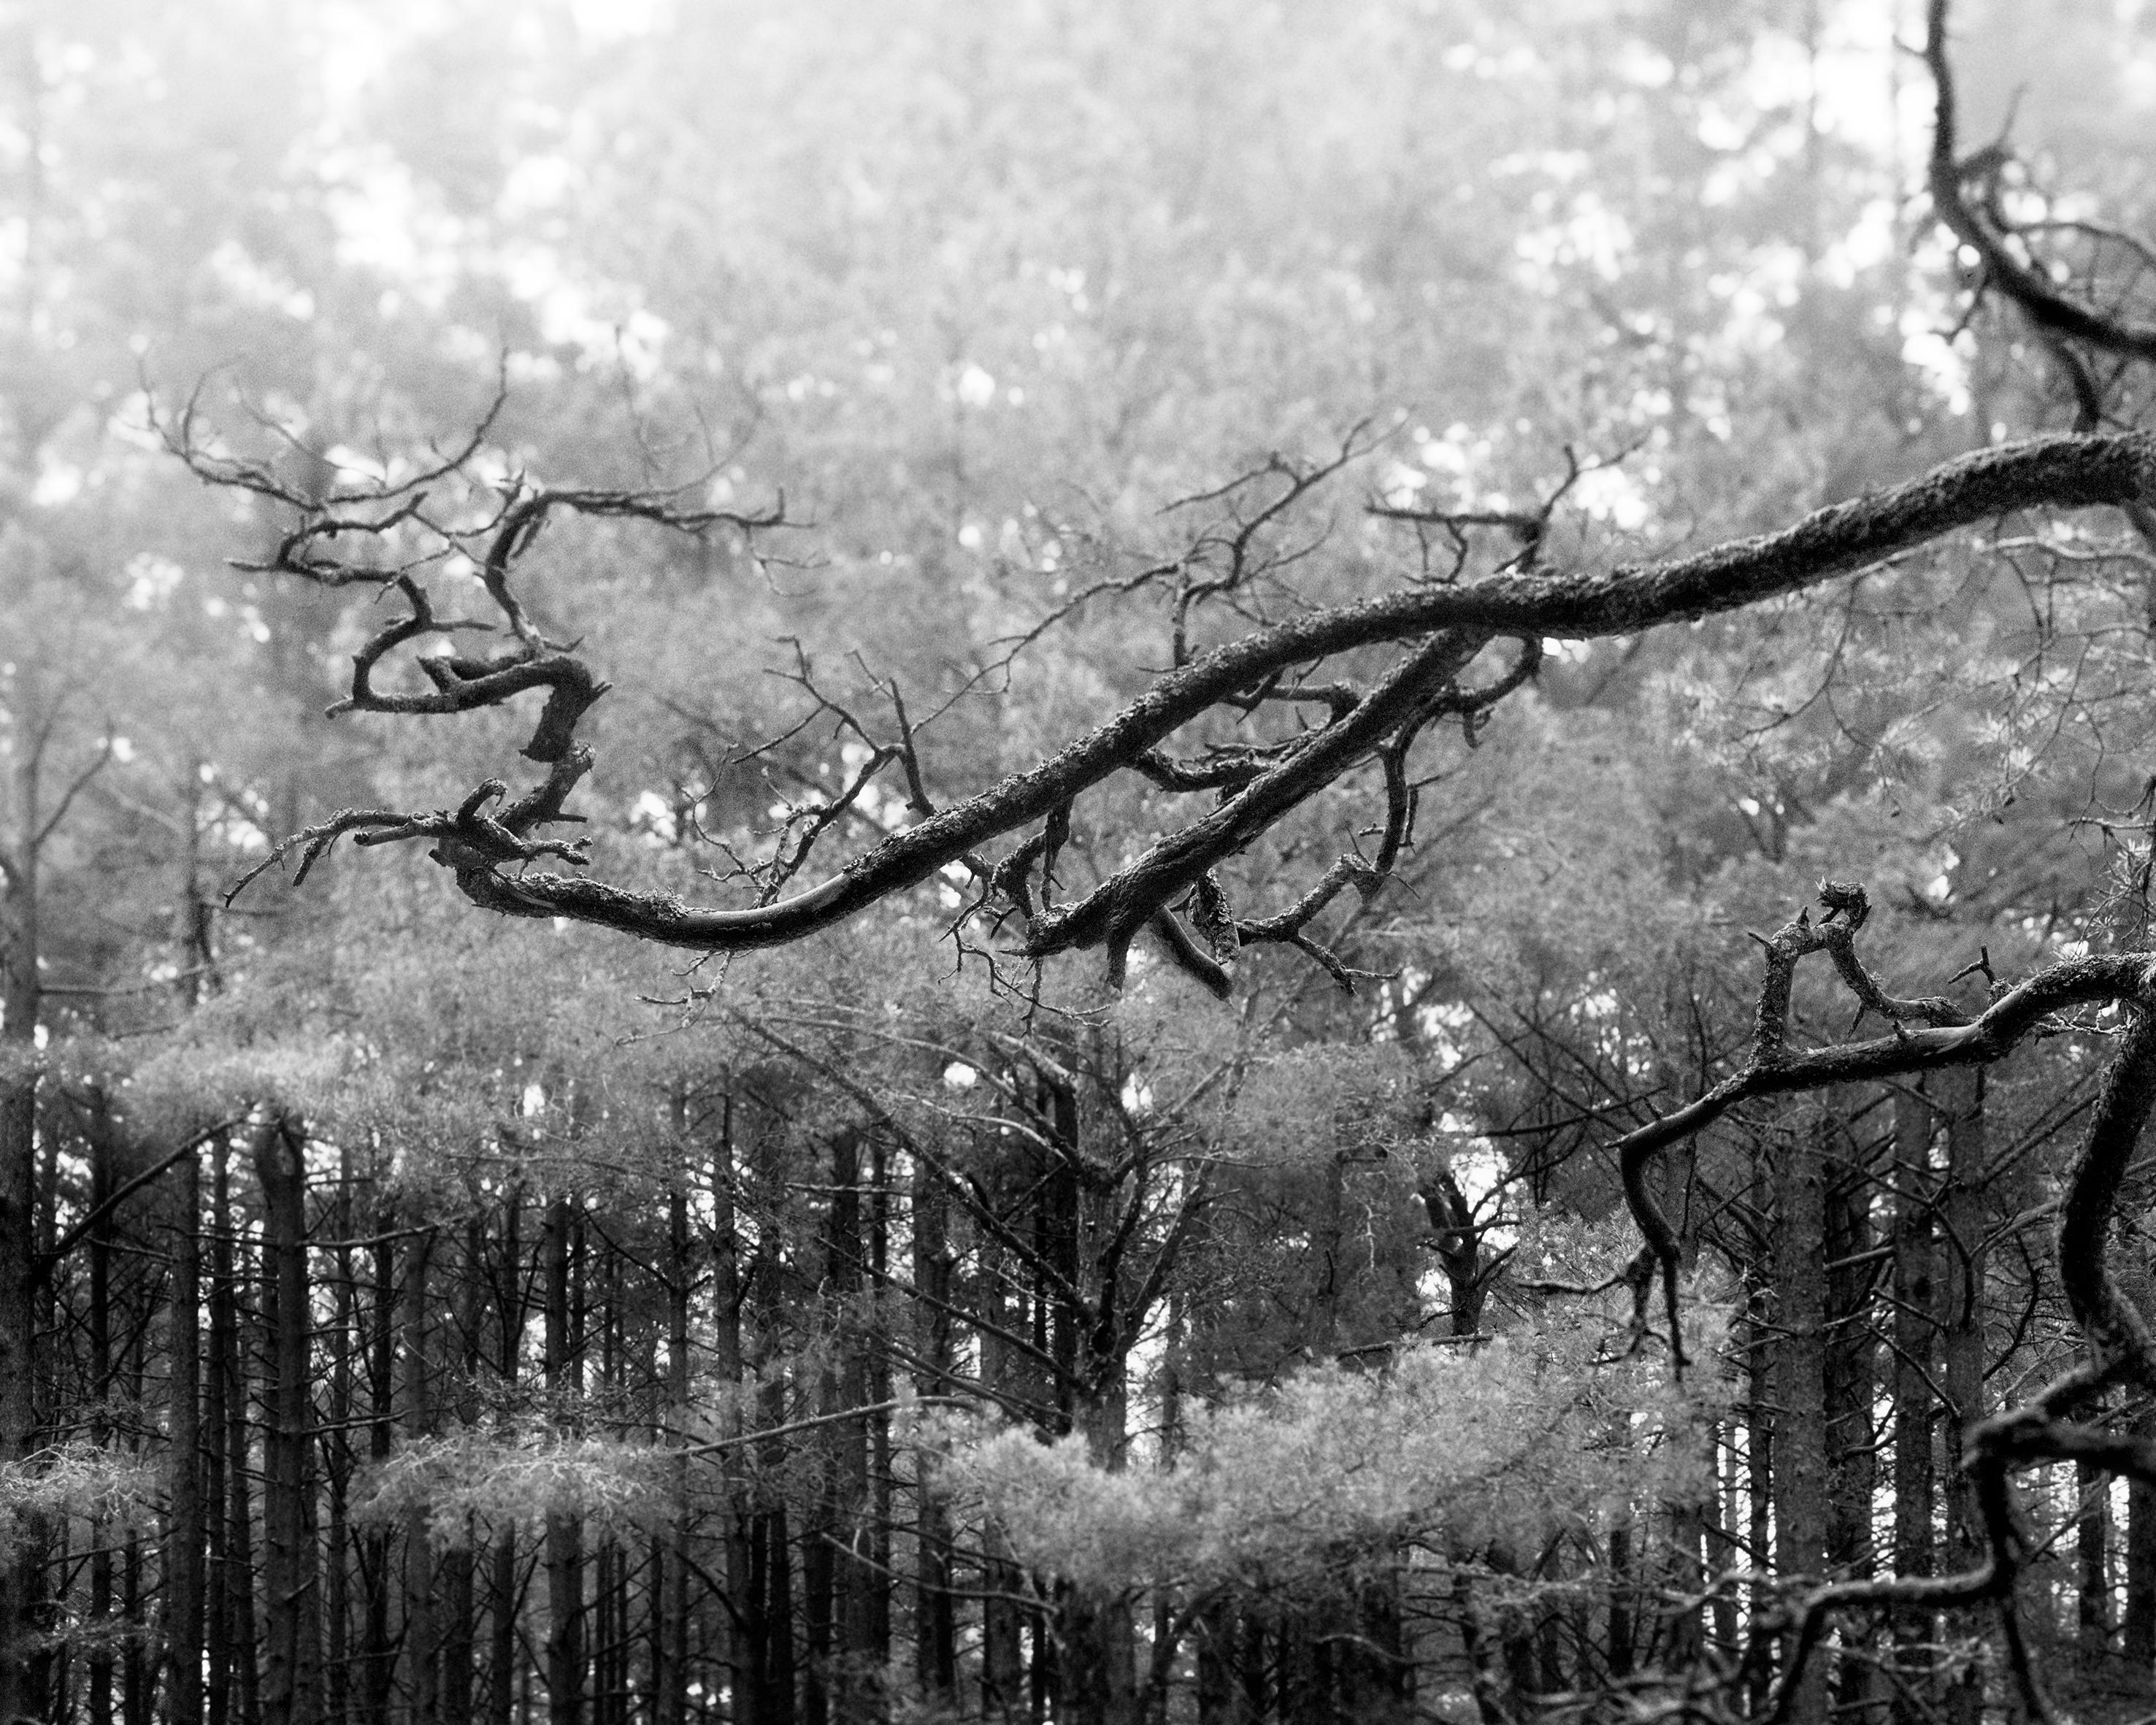 Black and White Photograph Ugne Pouwell - Pin de la Baltique - photographie analogique de forêt en noir et blanc, édition limitée à 10 exemplaires